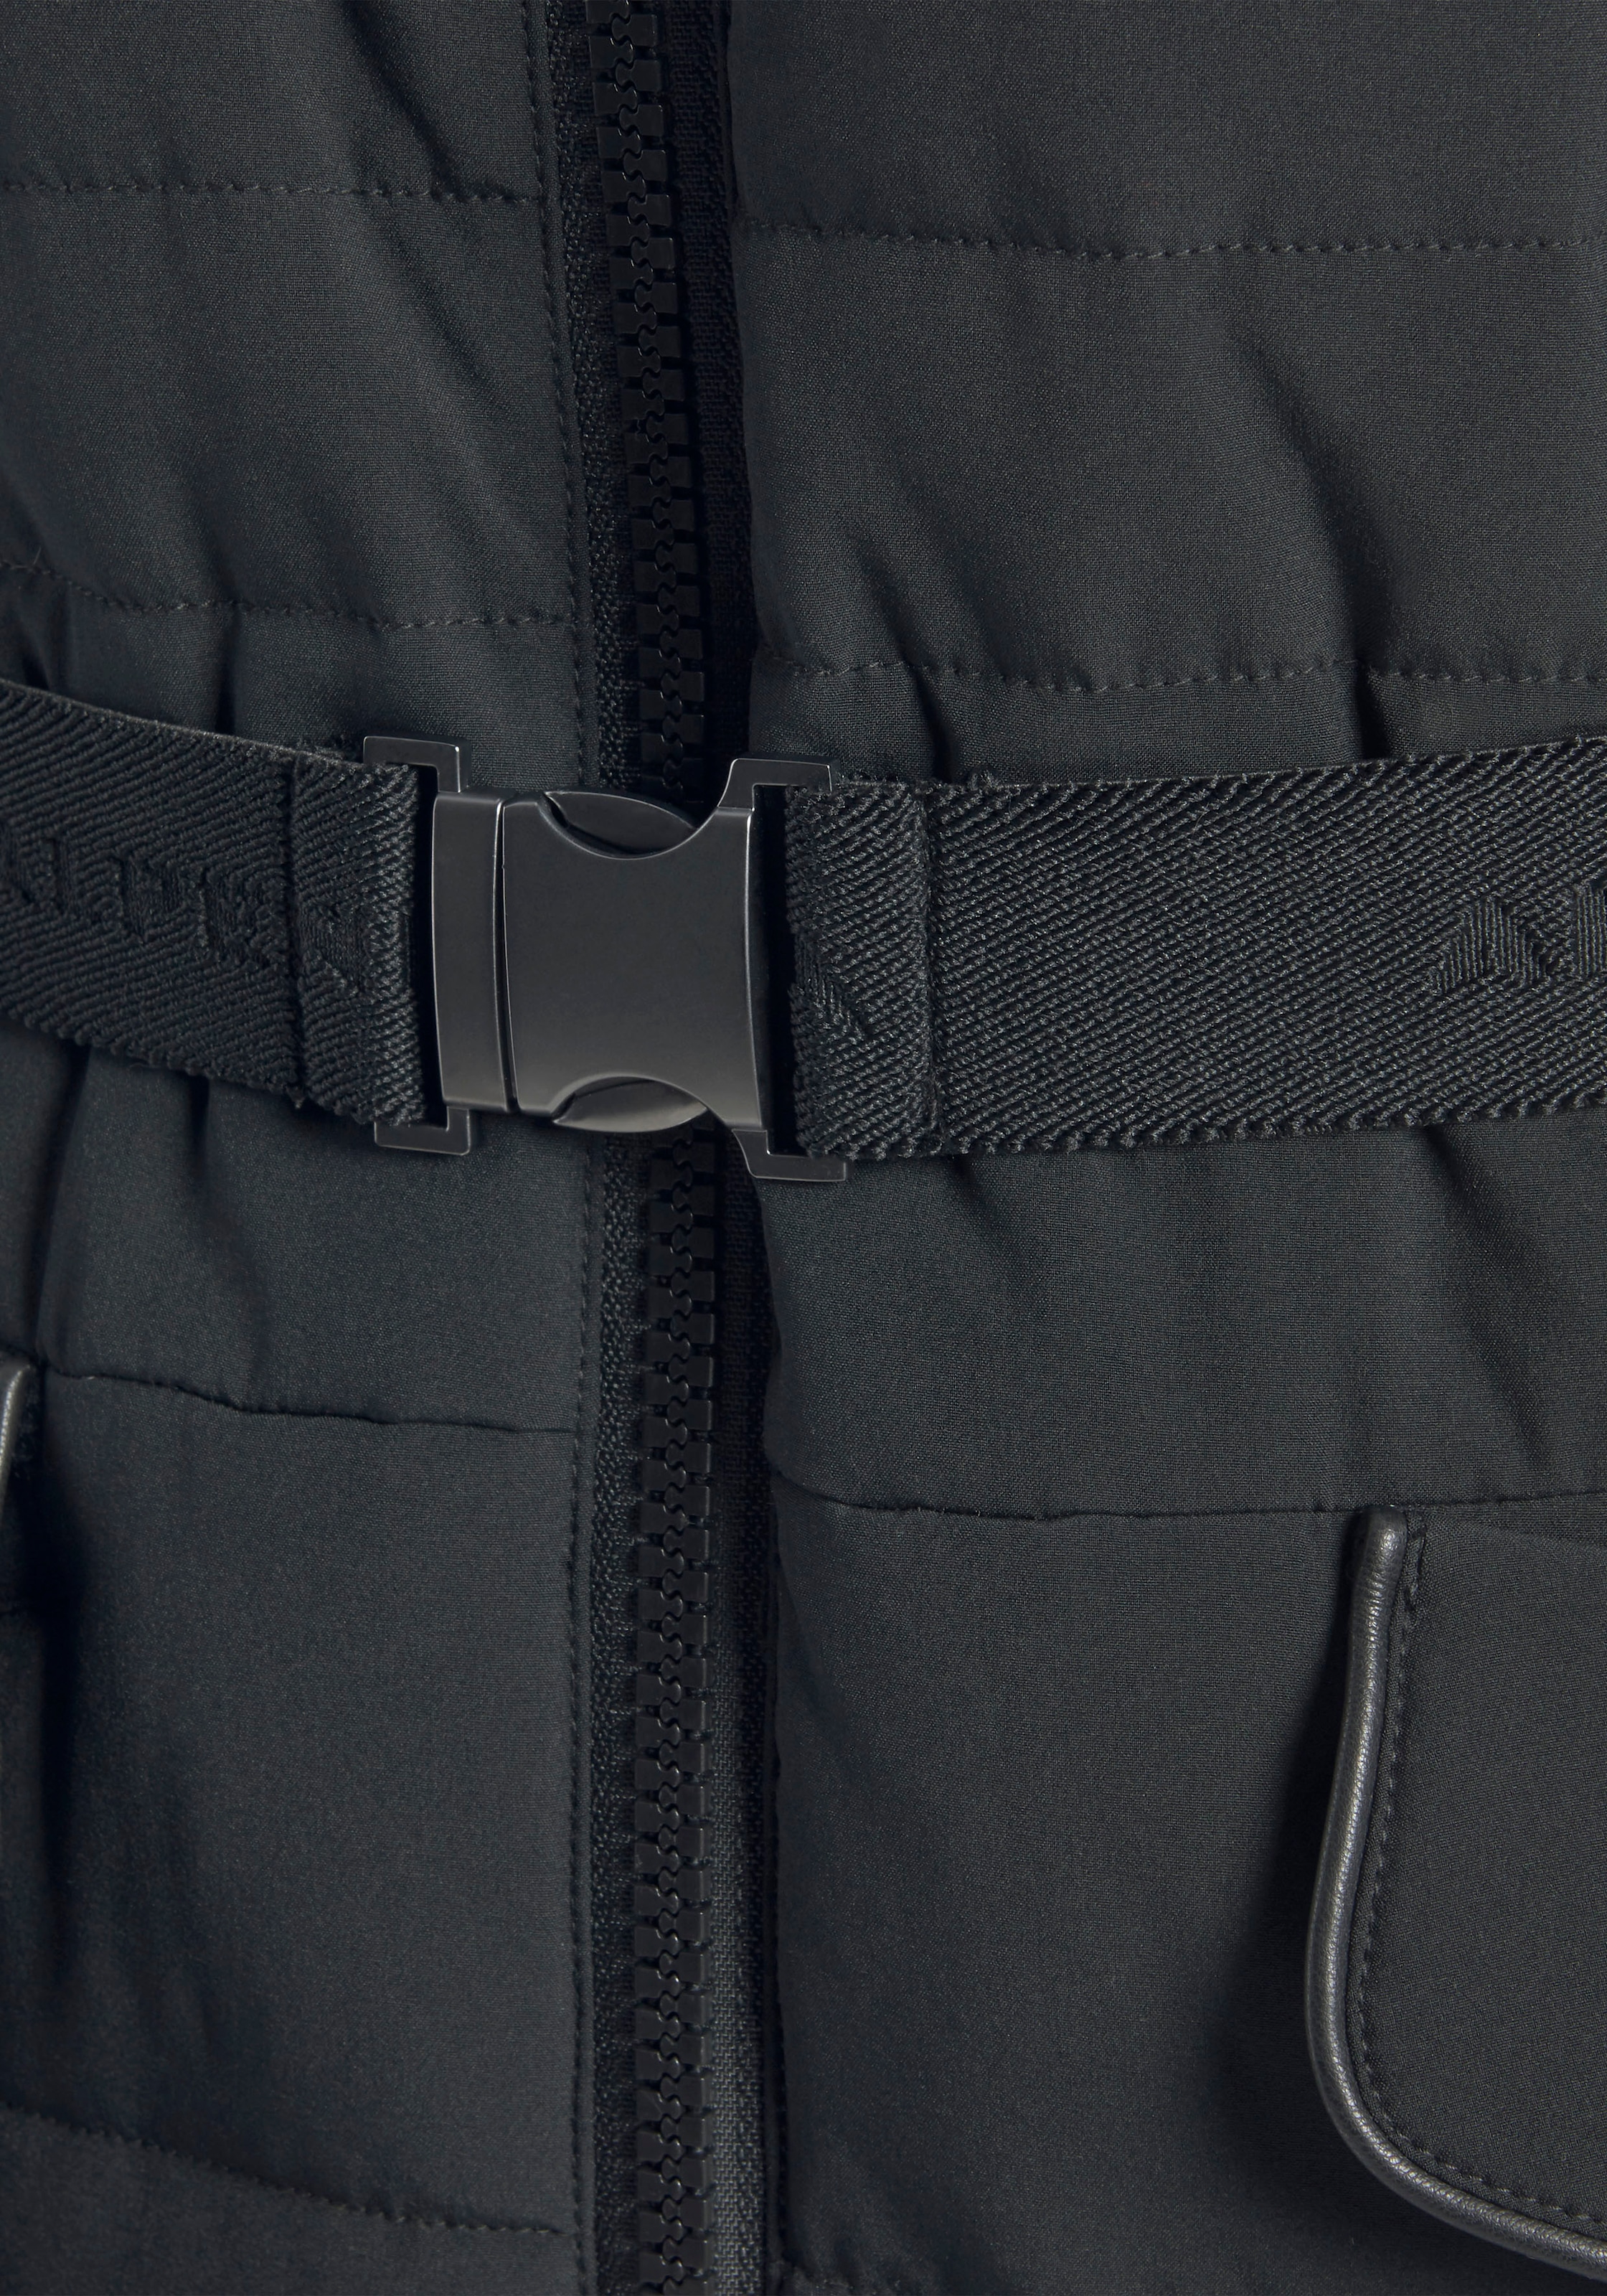 ALPENBLITZ kaufen auf für abnehmbarer long«, | BAUR dem & Steppmantel Mantel »Oslo Markenprägung Gürtel mit Kuschel-Kapuze